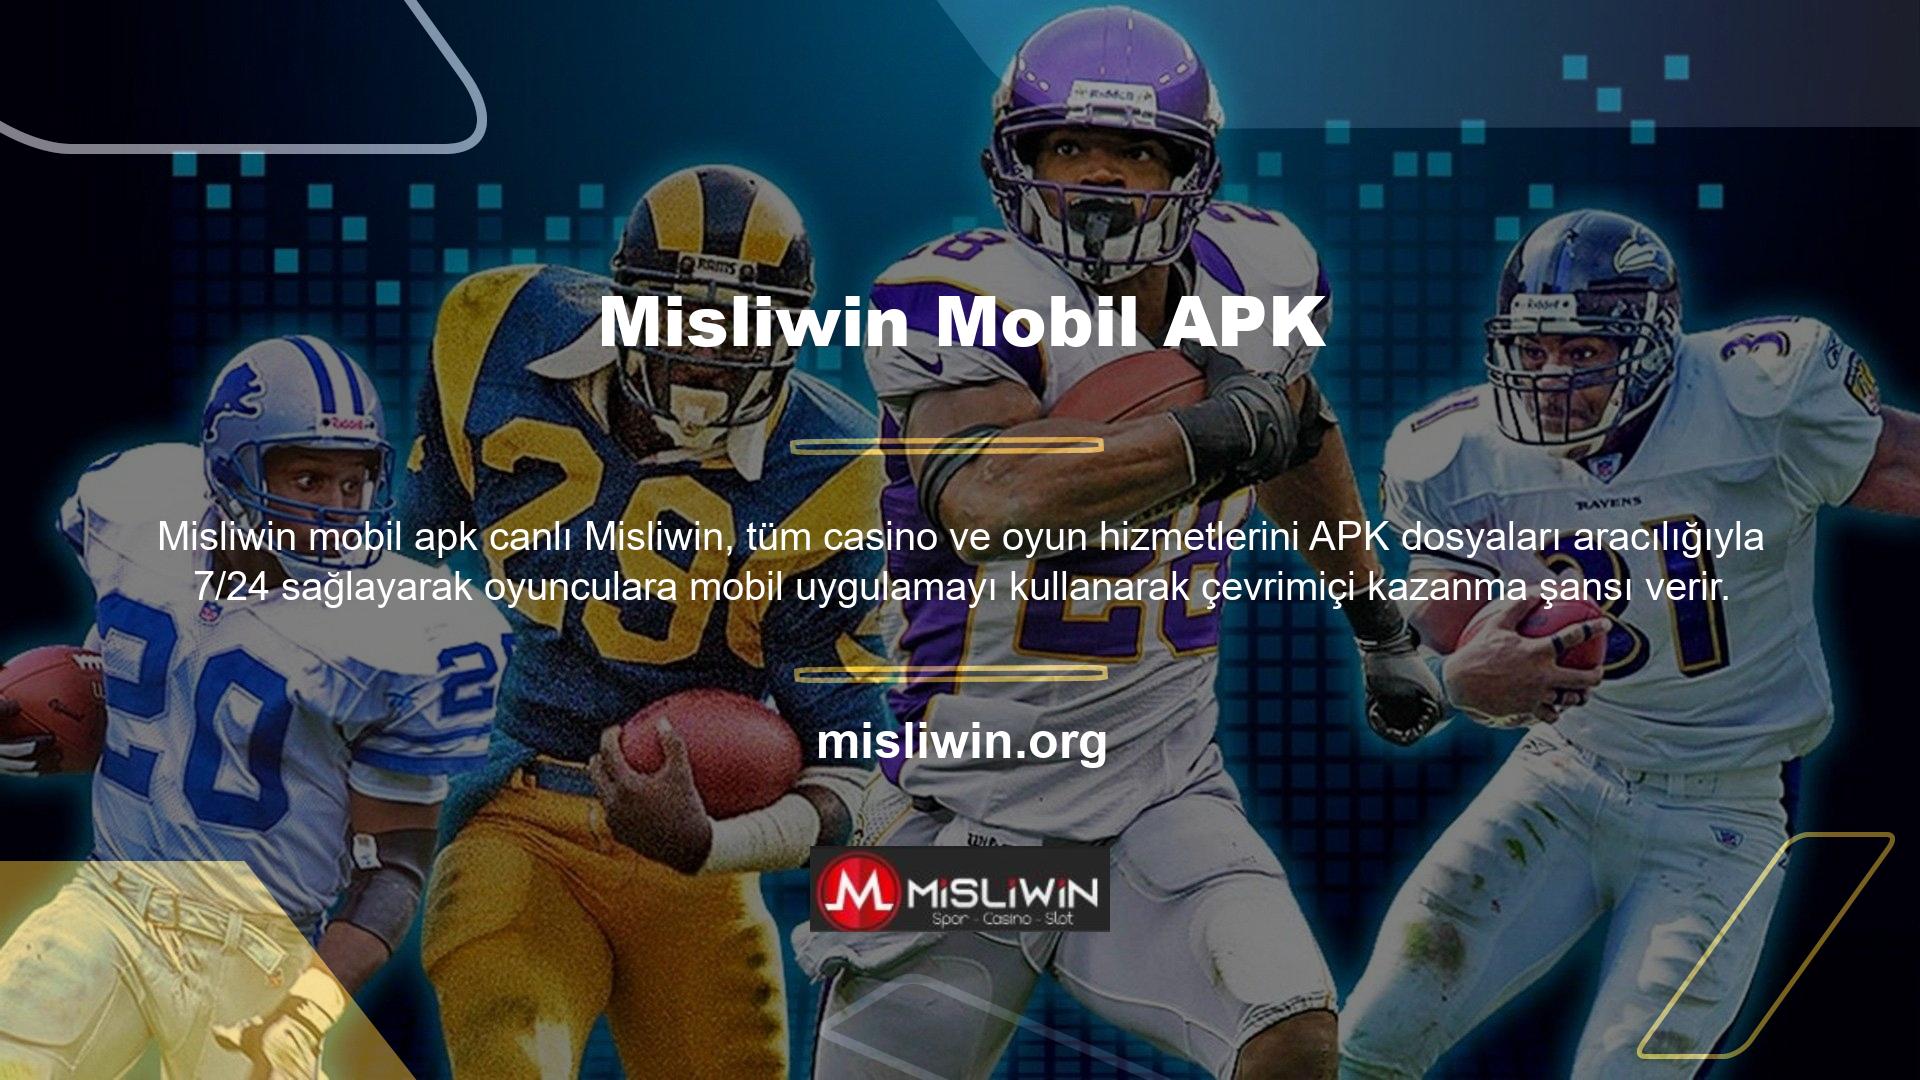 Misliwin mobil APK'sı ve iOS APK'sı için indirme bağlantıları bulunmaktadır